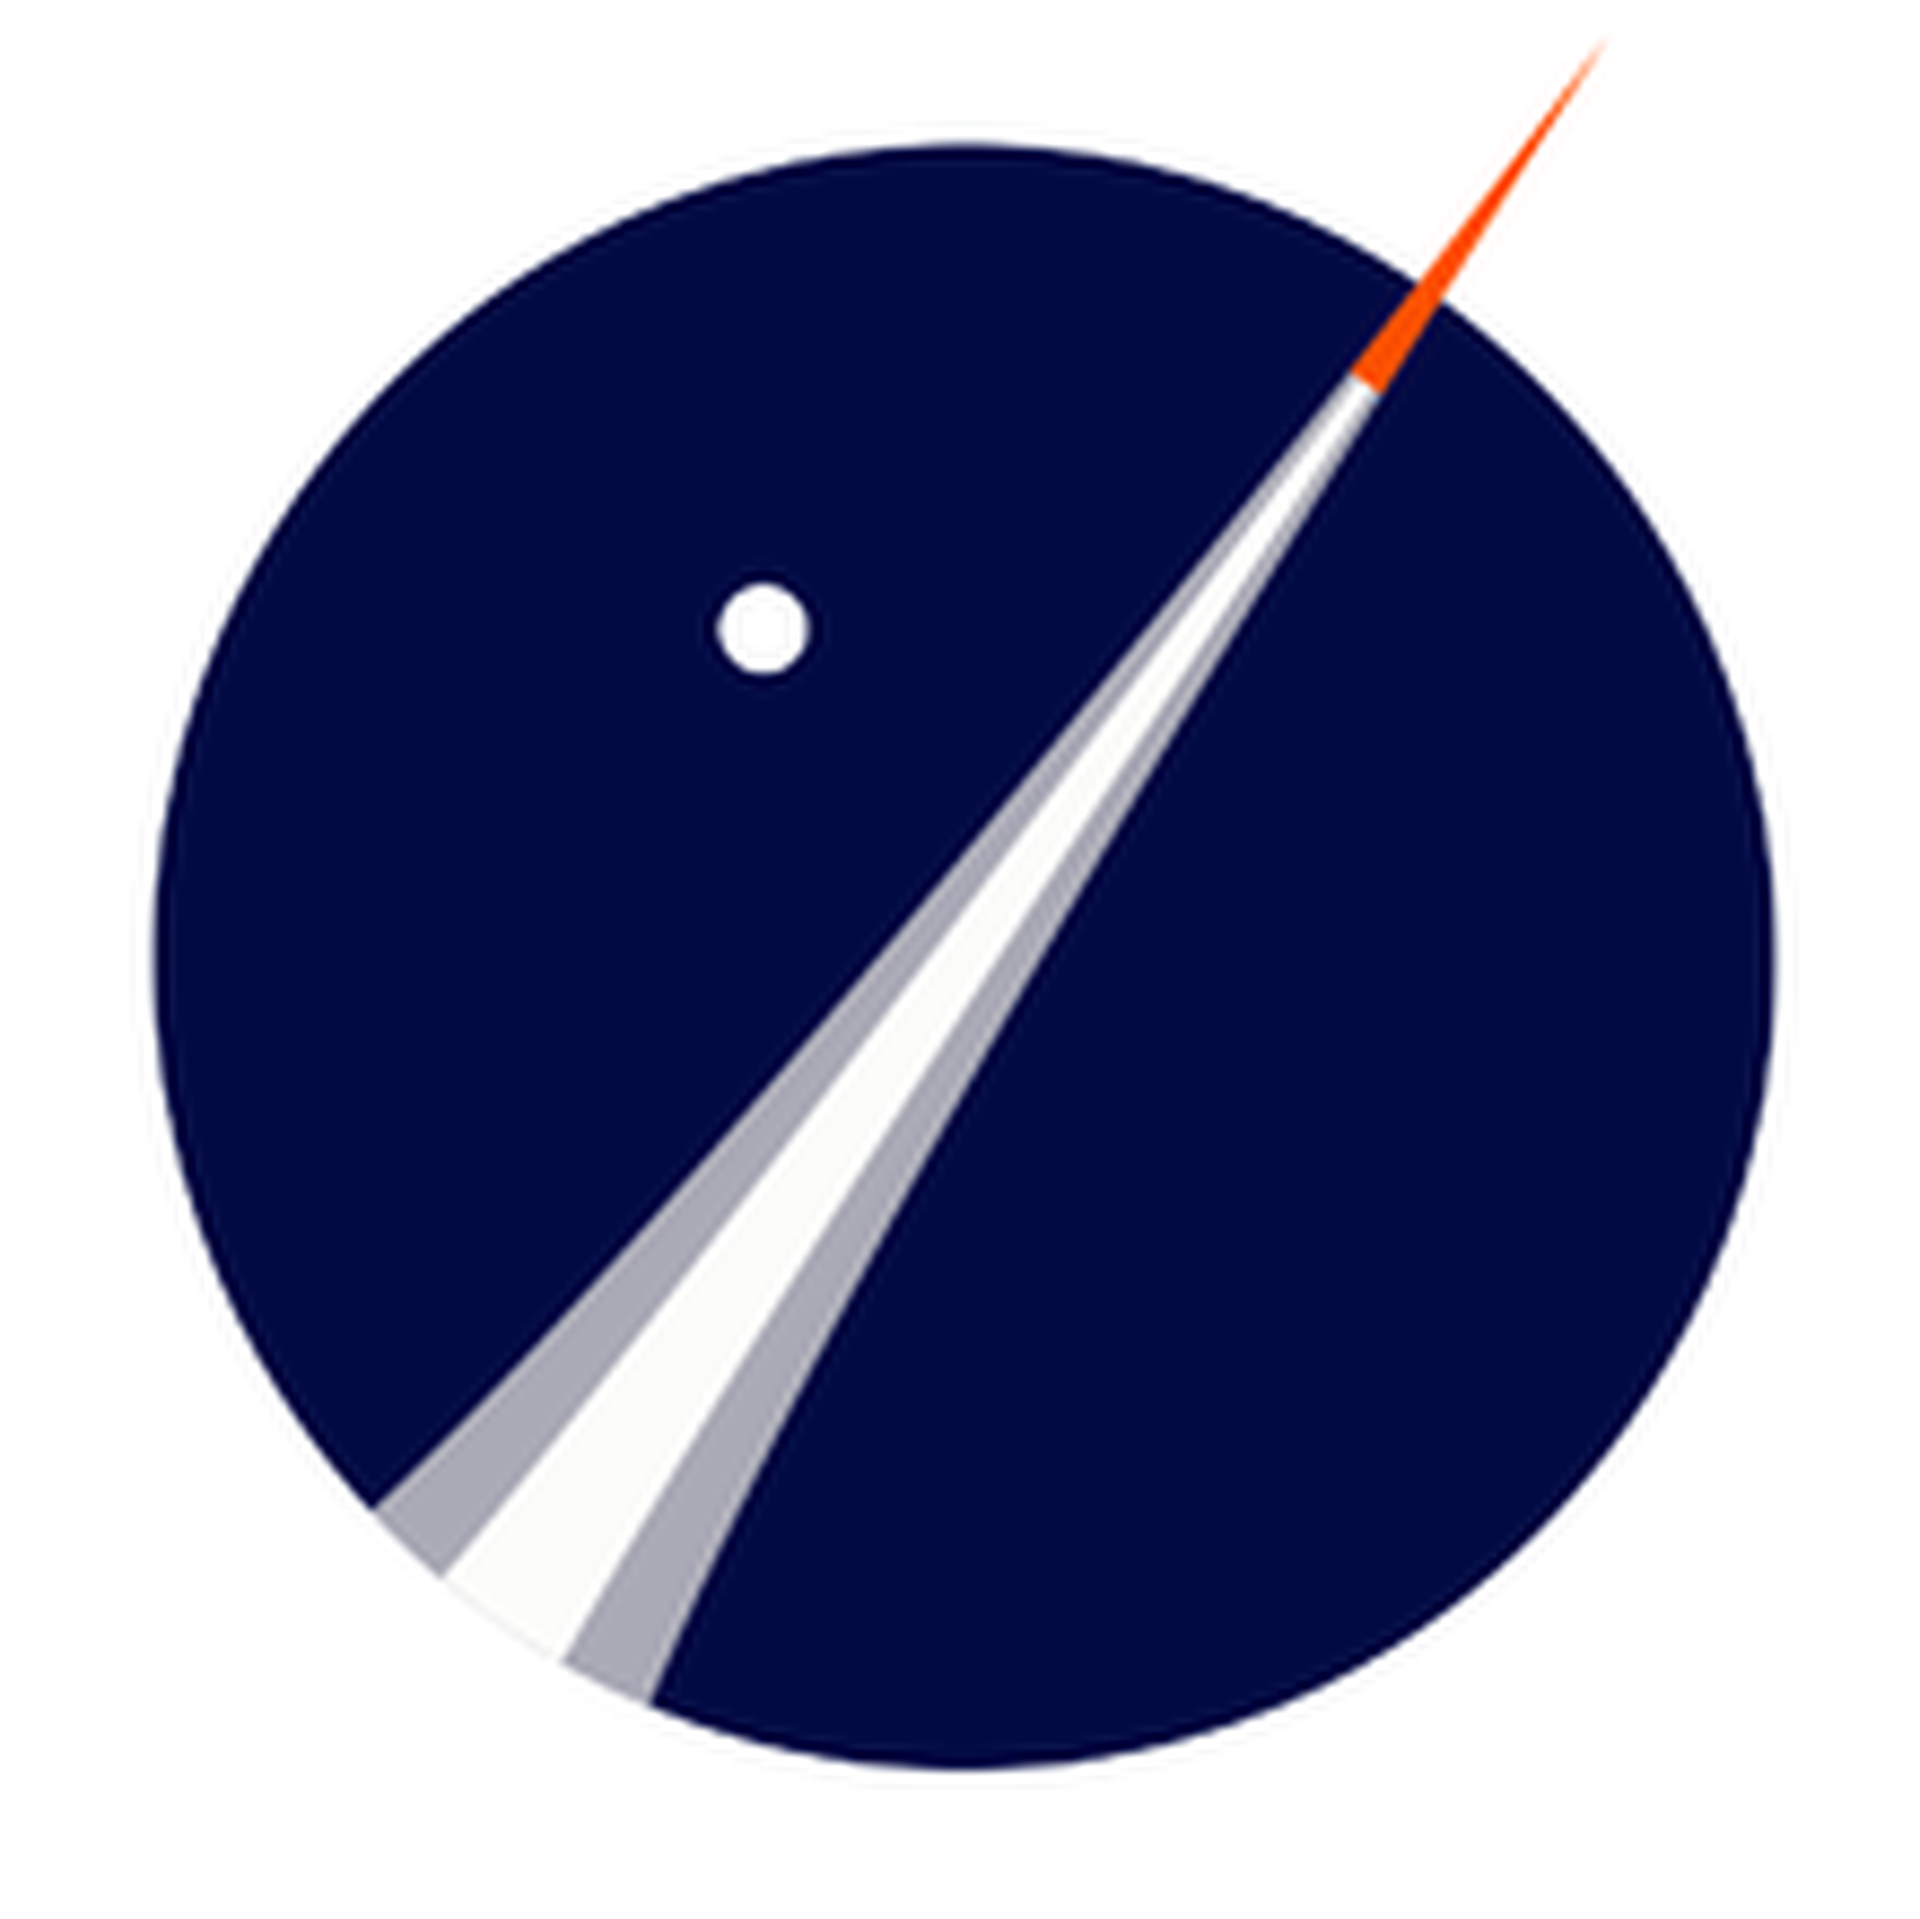 Copenhagen Suborbitals's logo